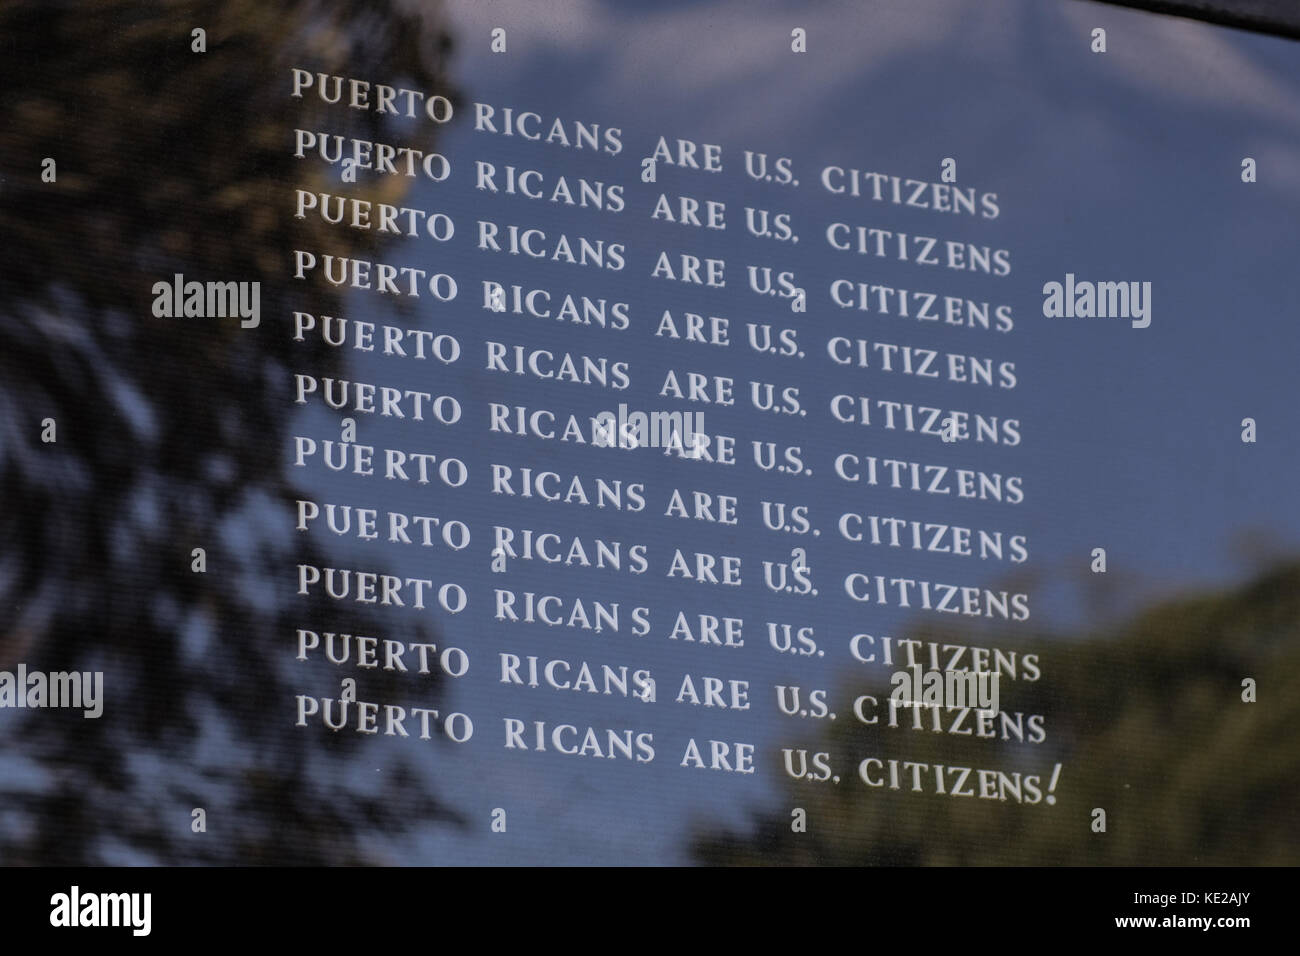 L'église enseigne à l'extérieur de Washington Square Park à lire 'les Portoricains sont citoyens américains". Banque D'Images